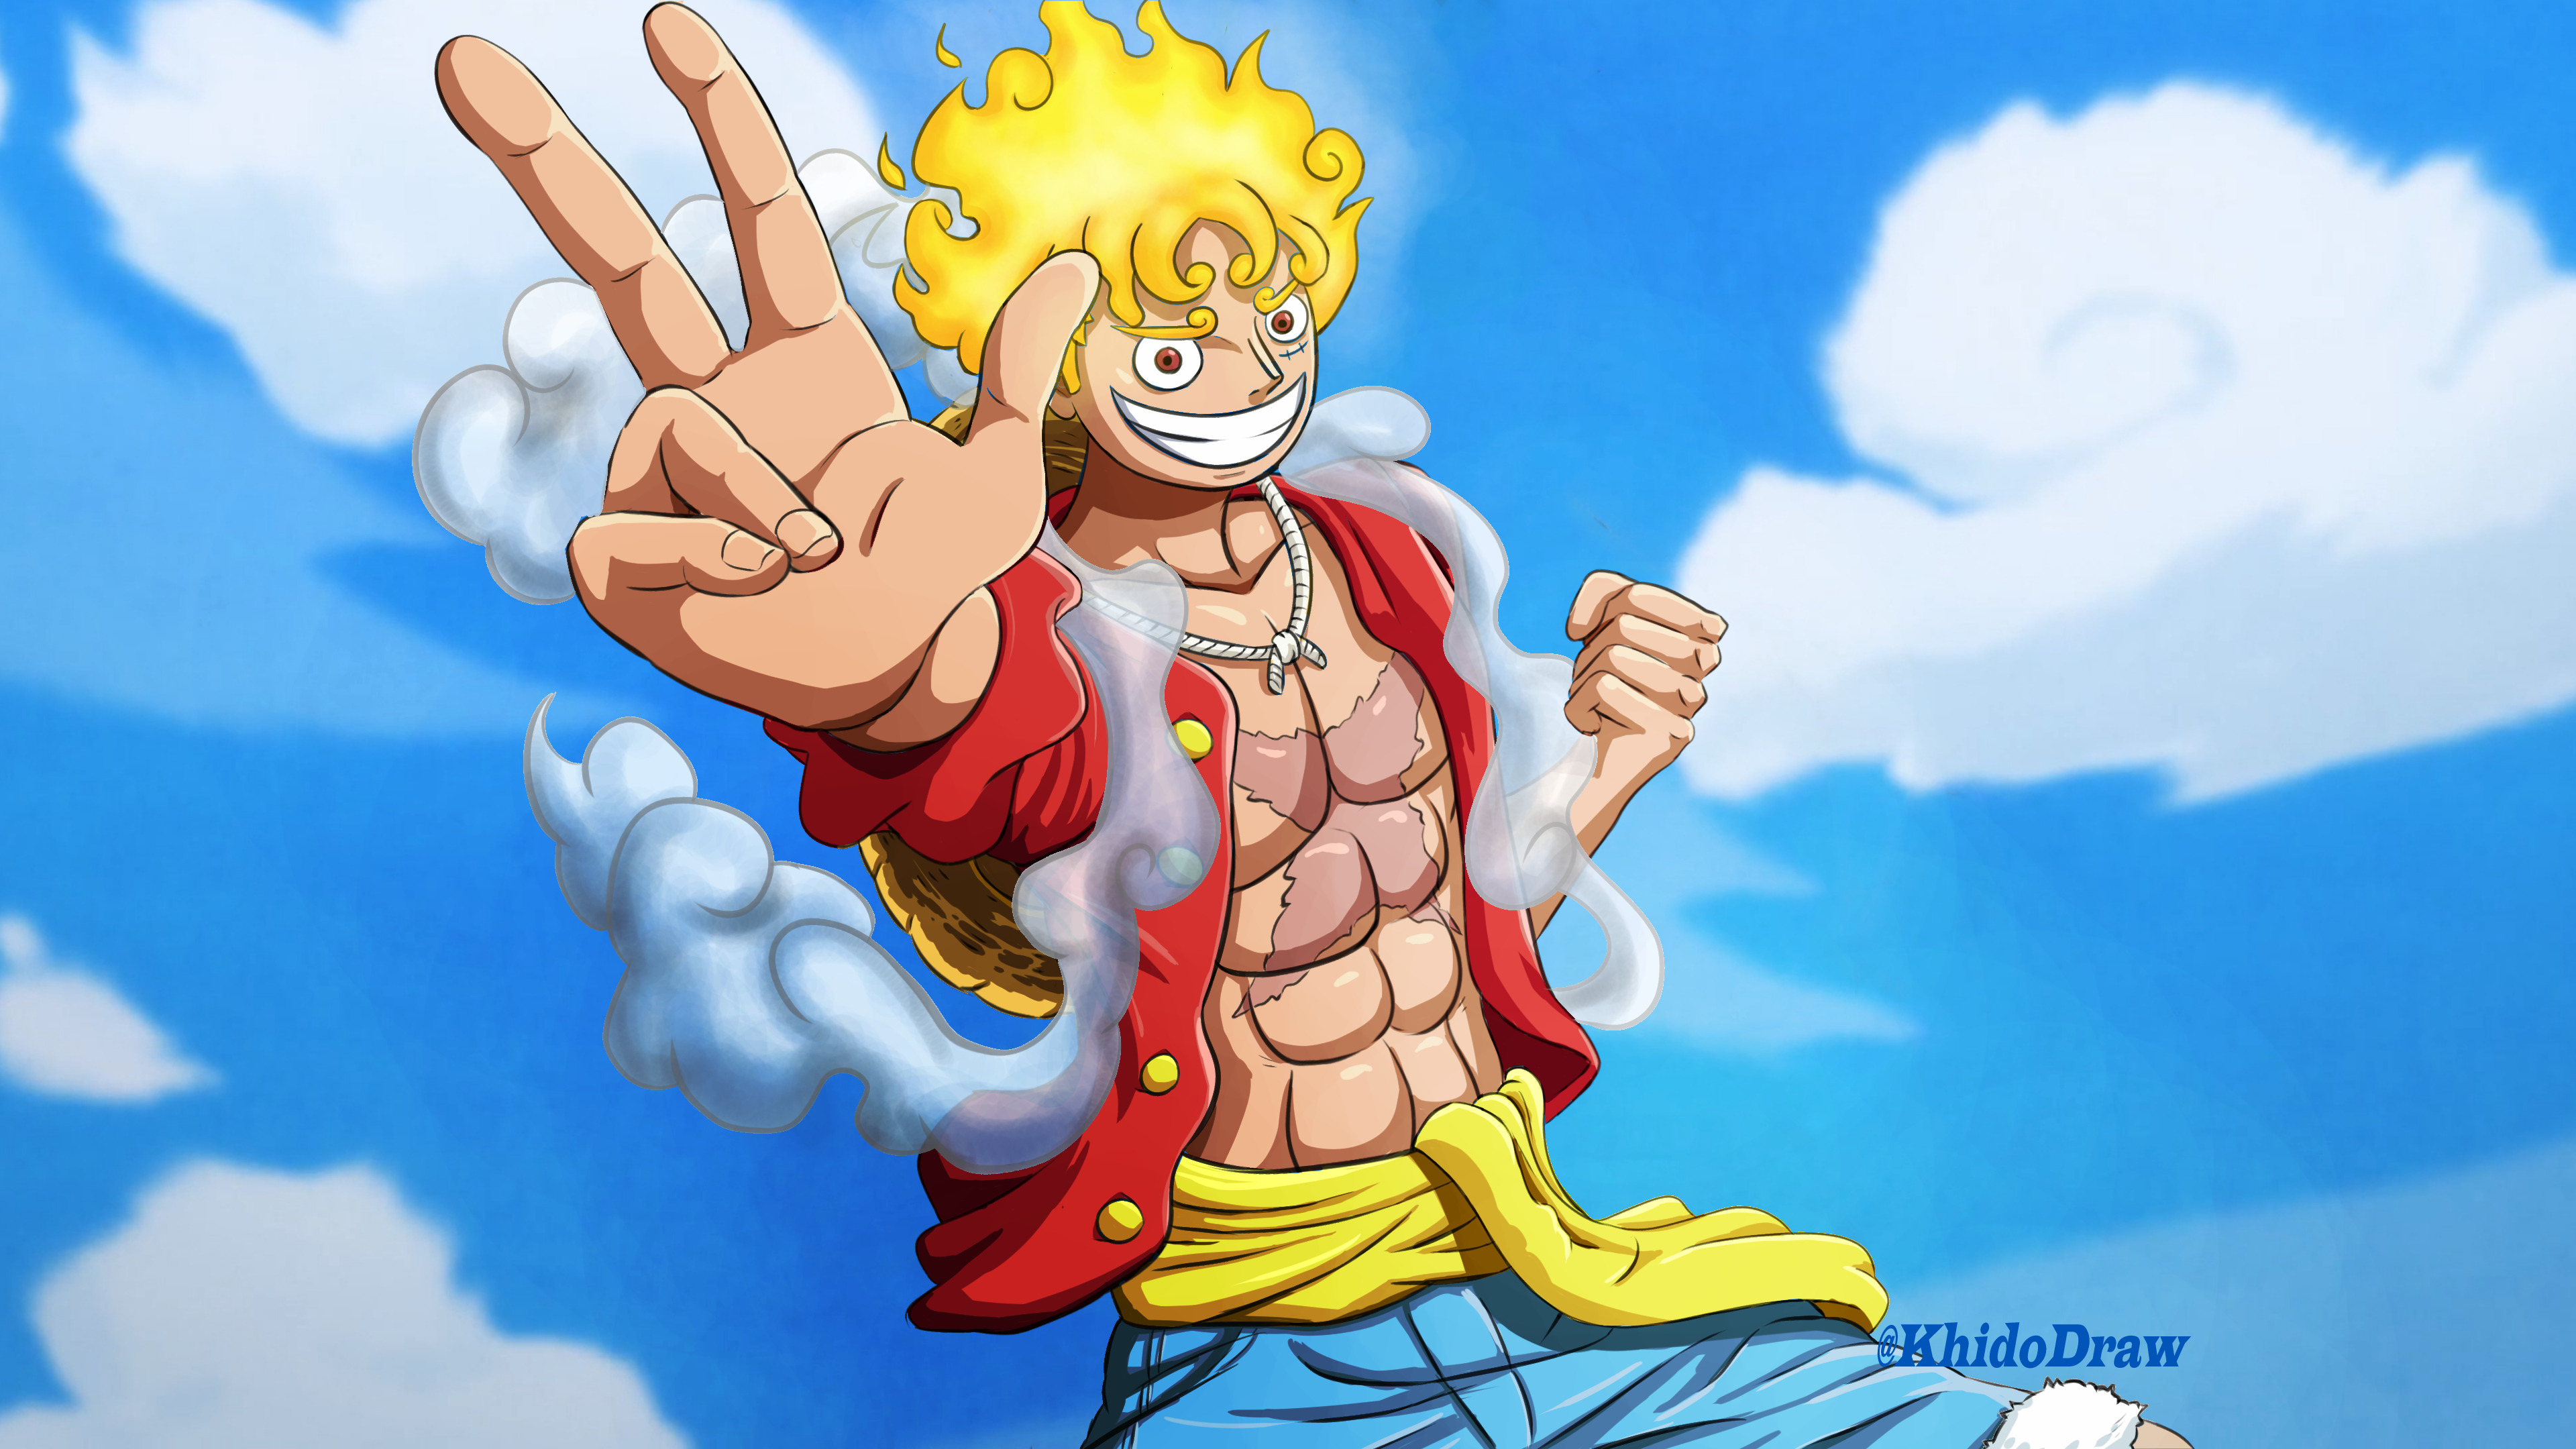 Luffy Gear 5: Là người hâm mộ One Piece, bạn có muốn thấy sự trưởng thành của Monkey D. Luffy với Gear 5 tuyệt đỉnh không? Hãy đến với hình ảnh và trải nghiệm những khung hình đầy kích thích.